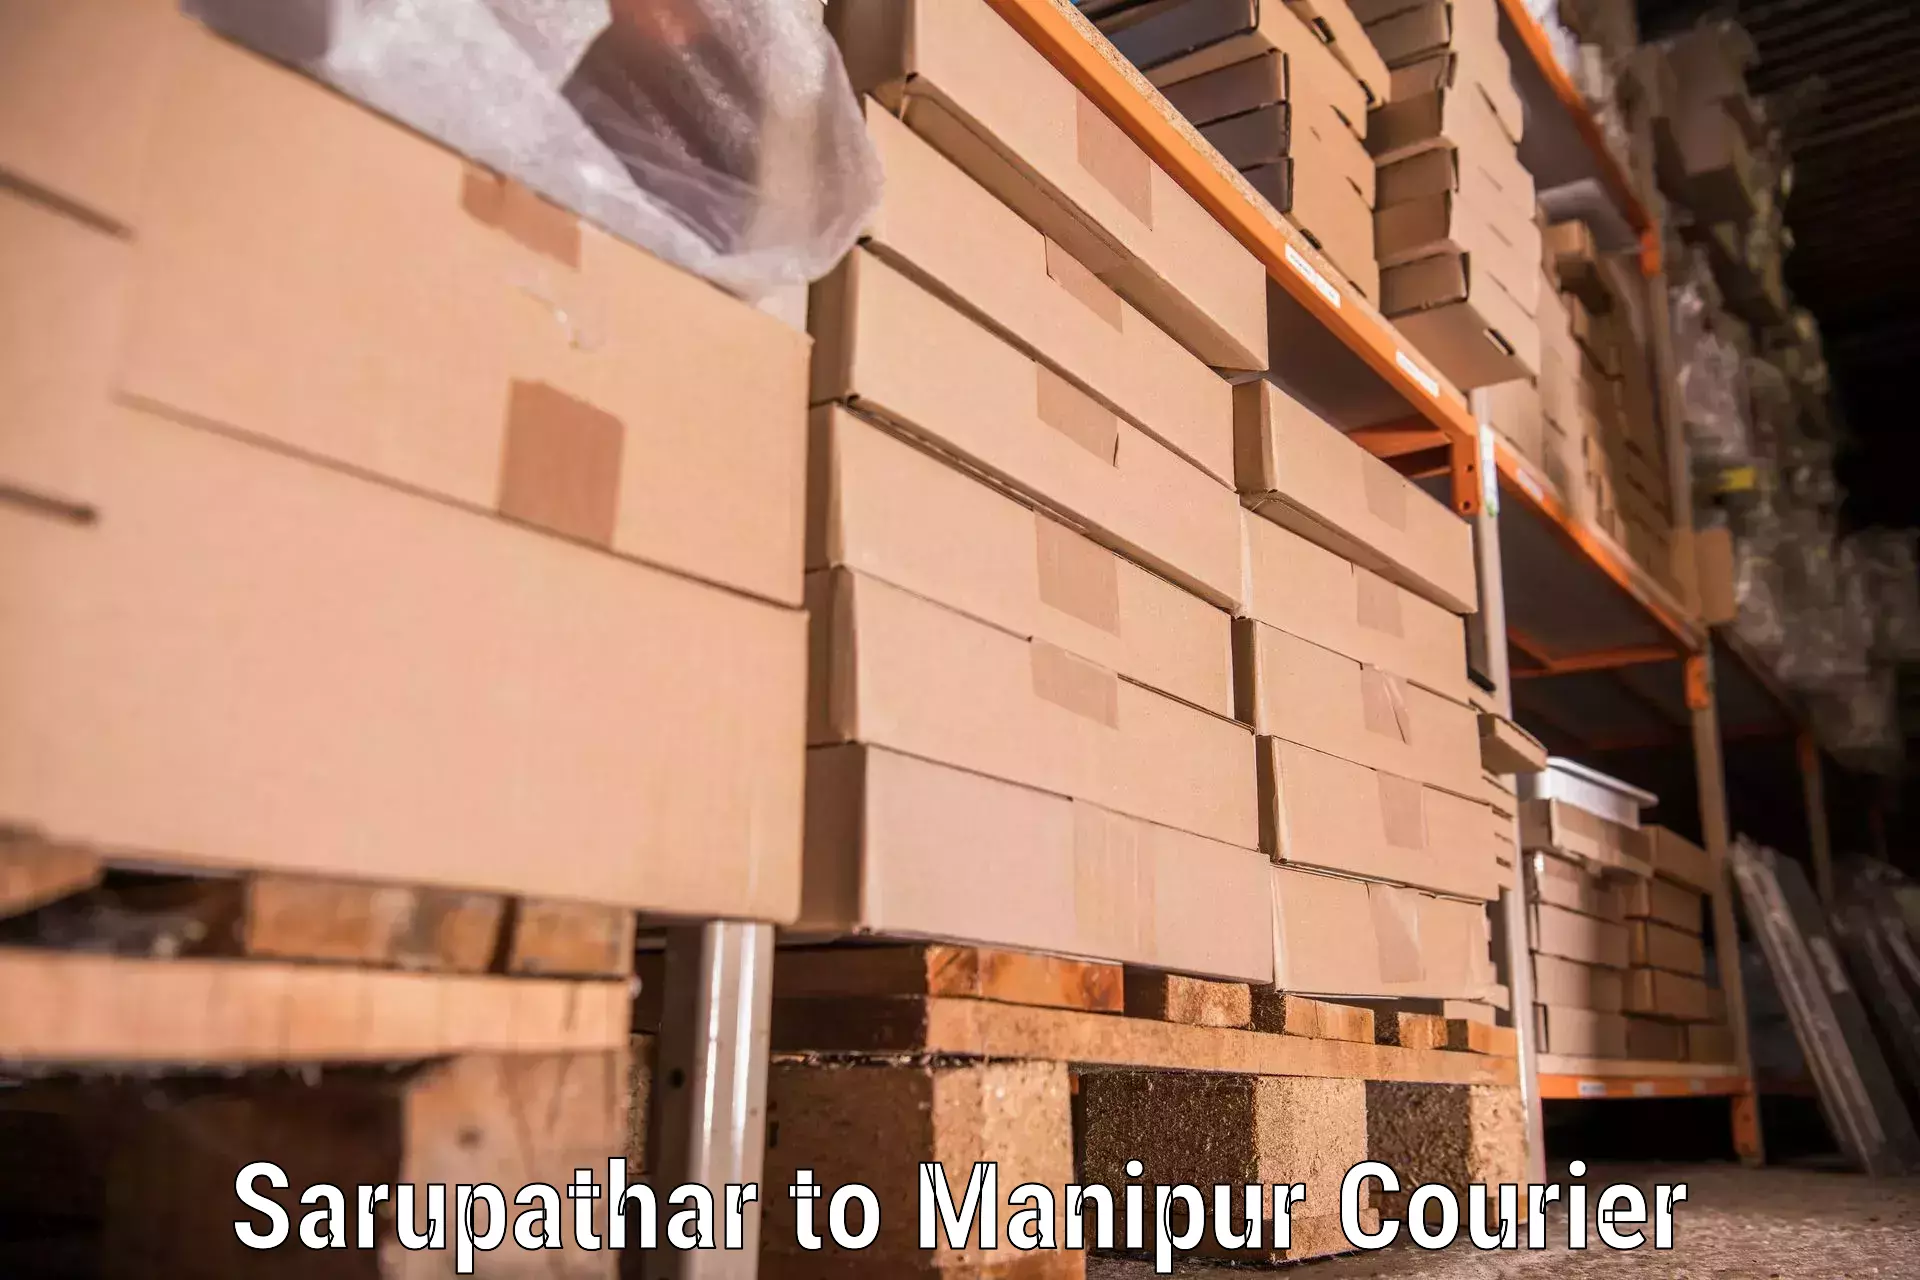 Furniture moving assistance Sarupathar to Chandel